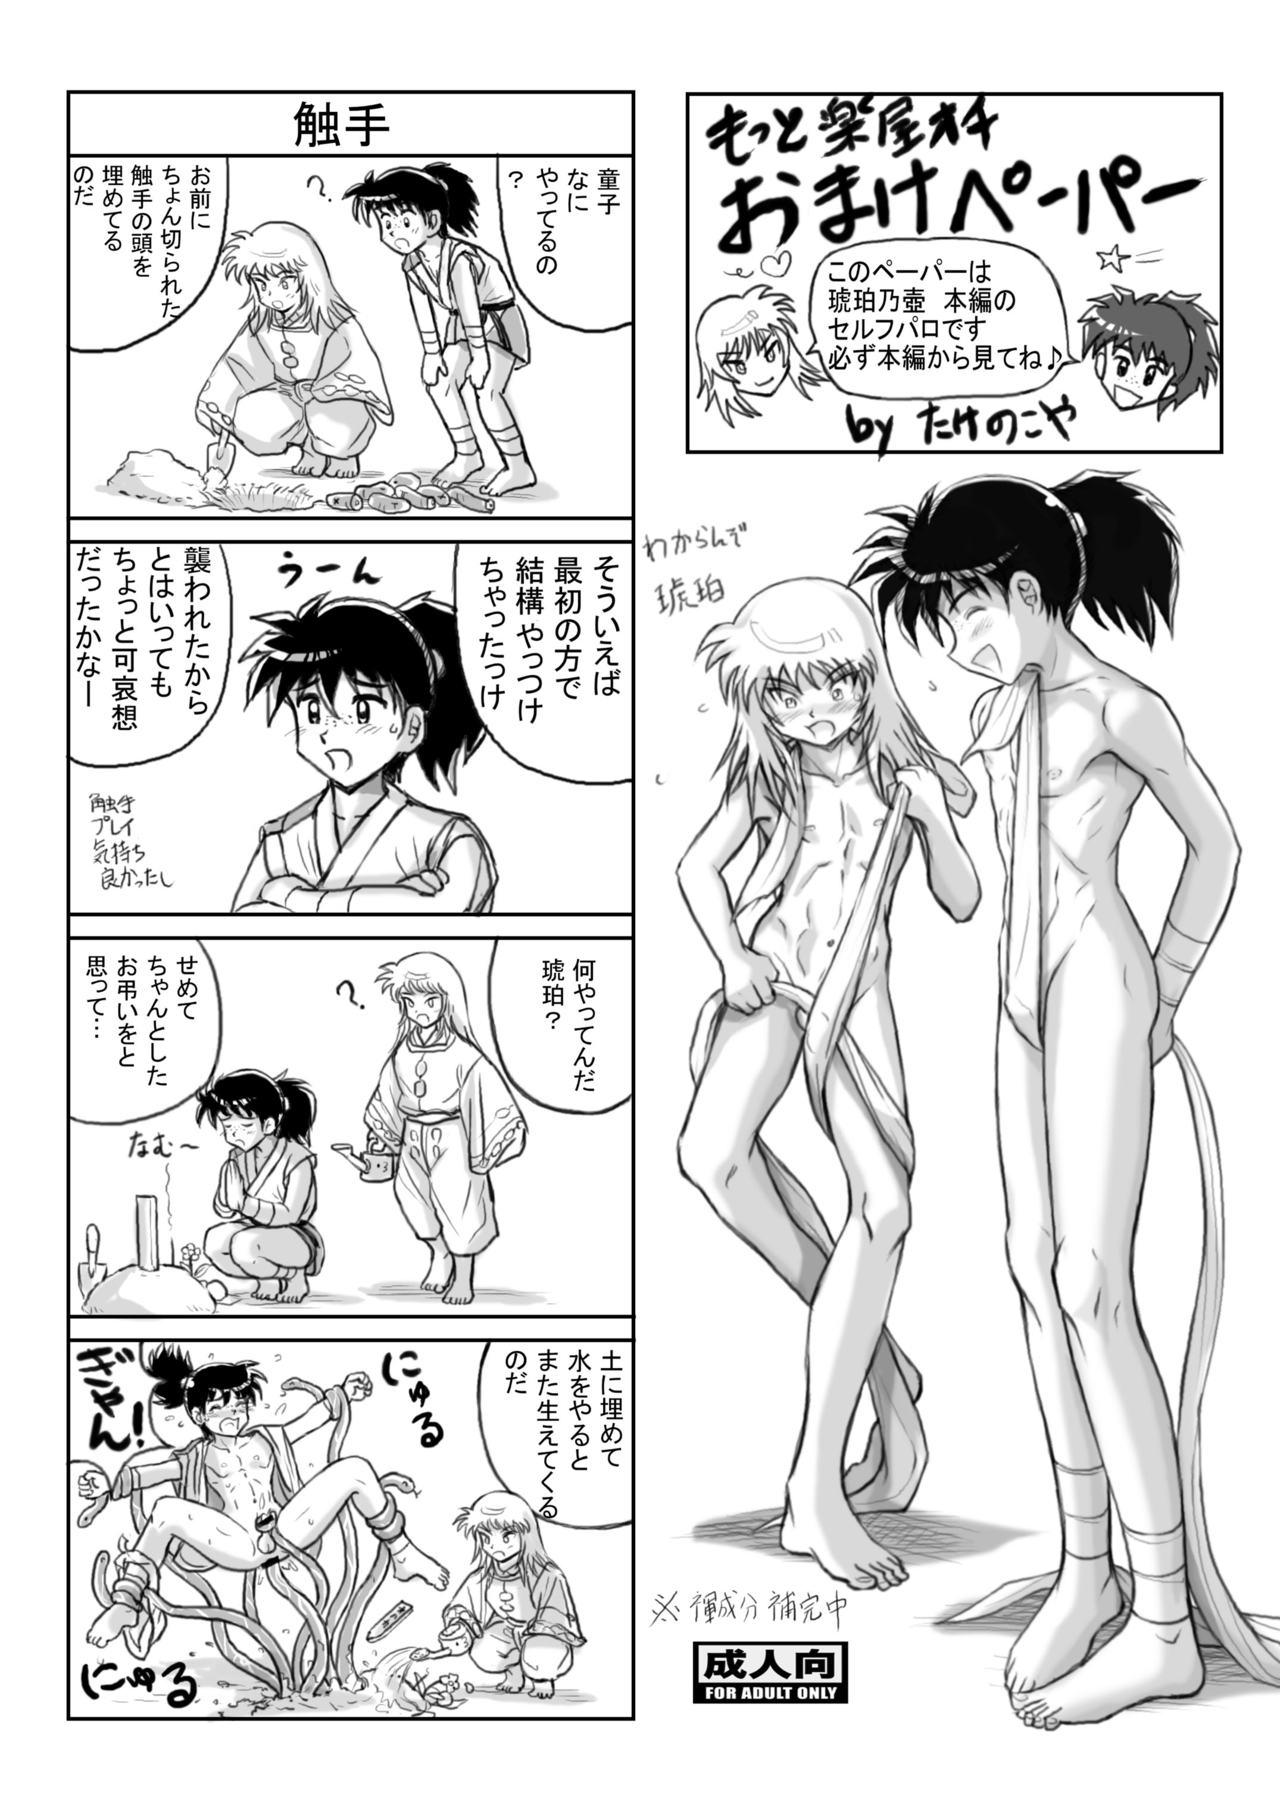 Kohaku no Tsubo Manga-ban 34